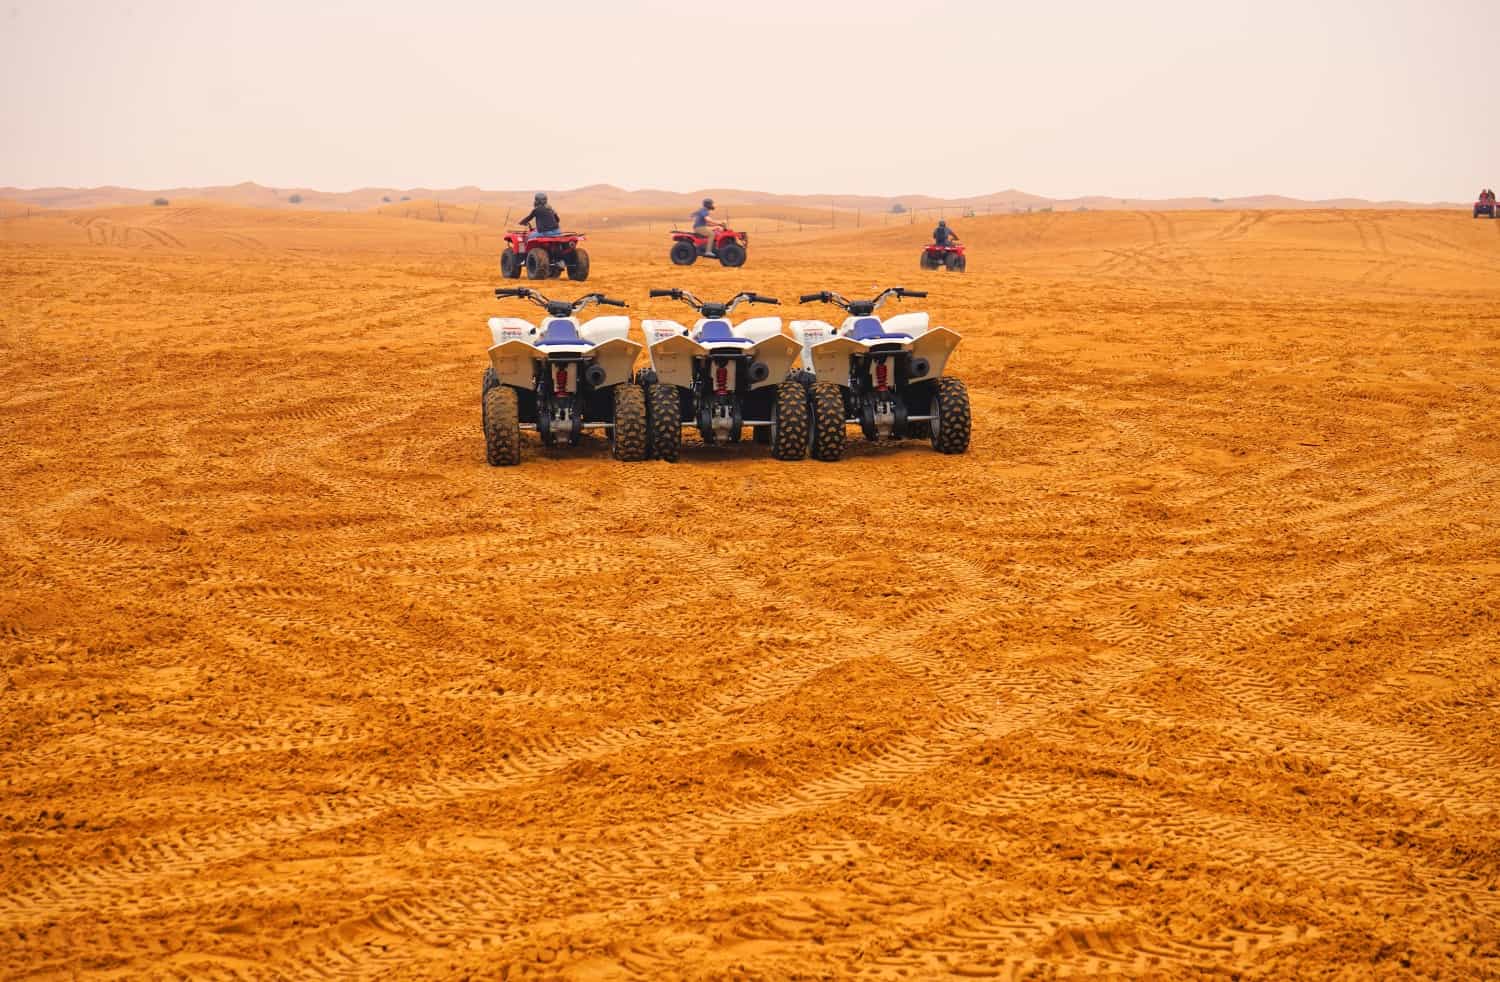 Riding ATVs over sand dunes in Dubai